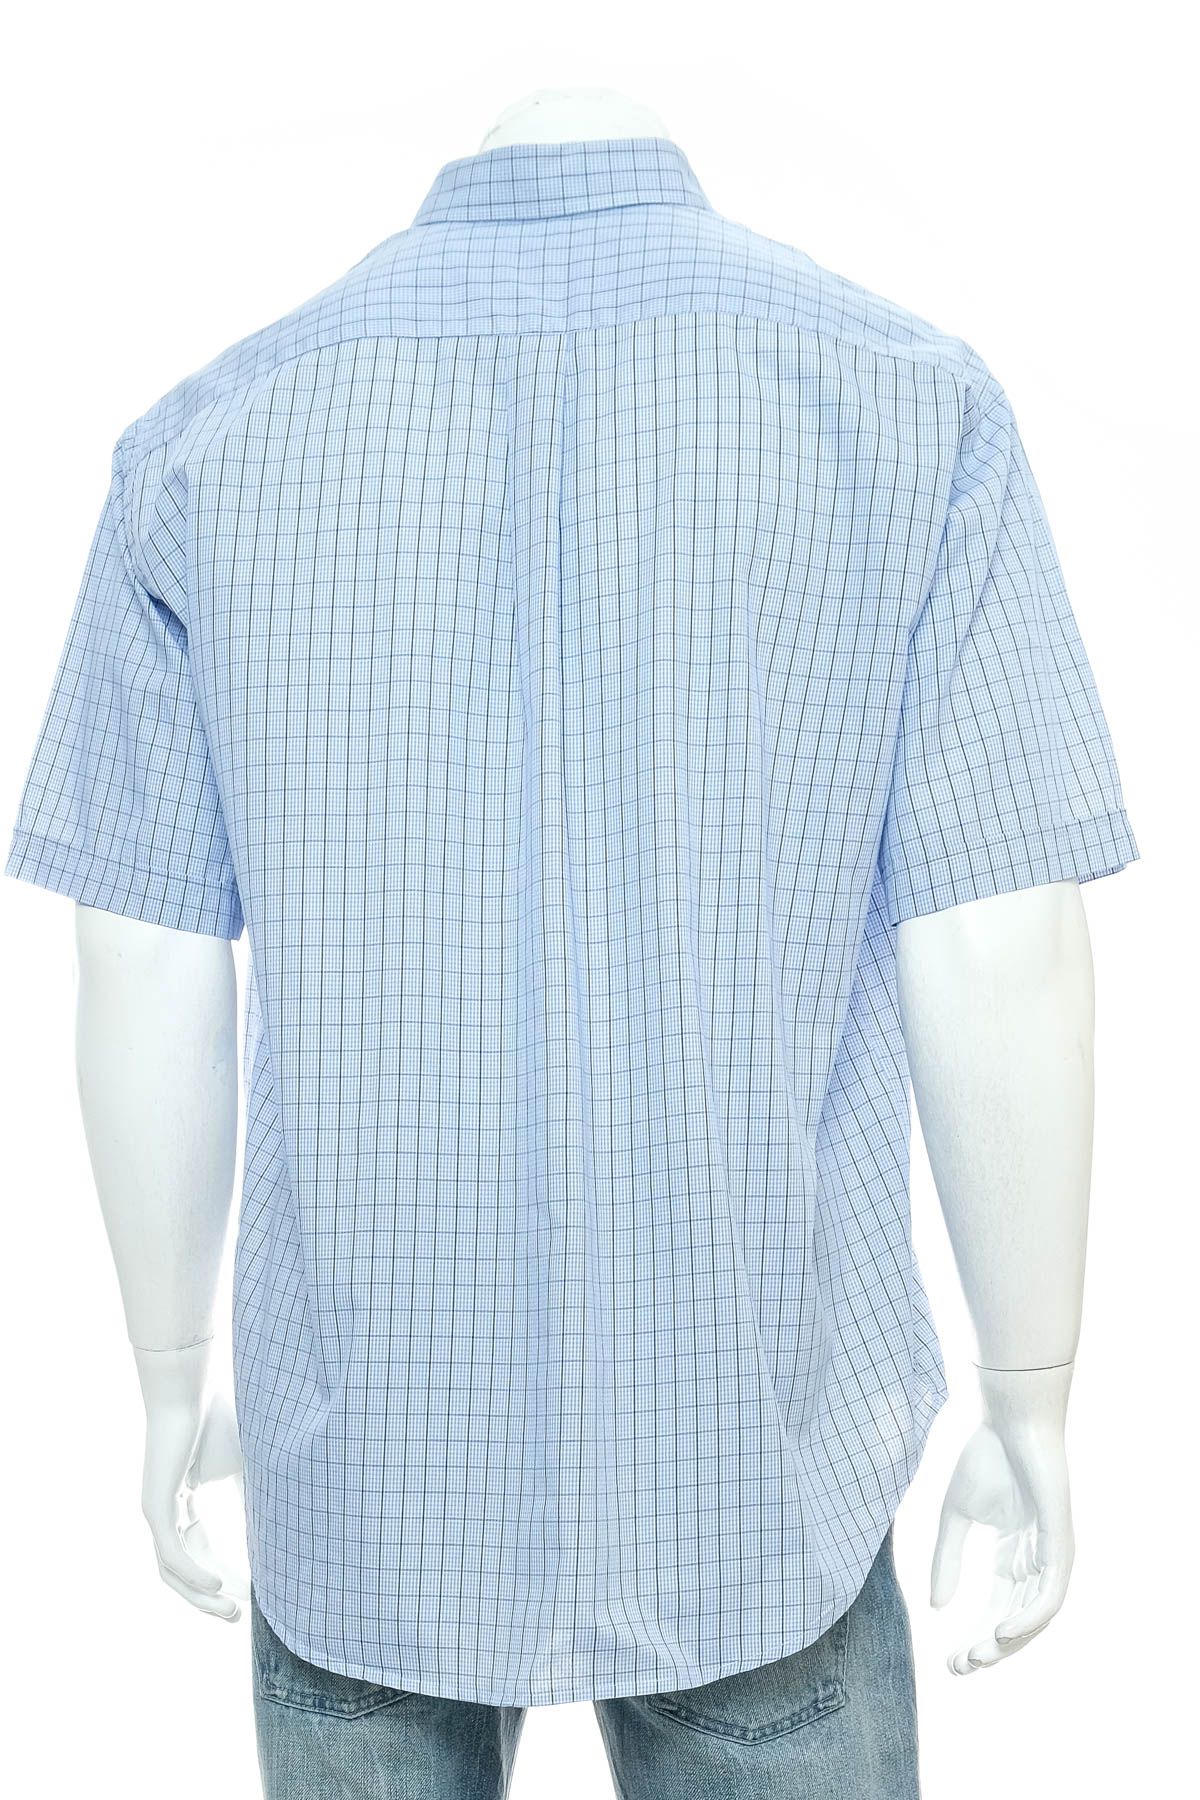 Ανδρικό πουκάμισο - Cyrillus - 1